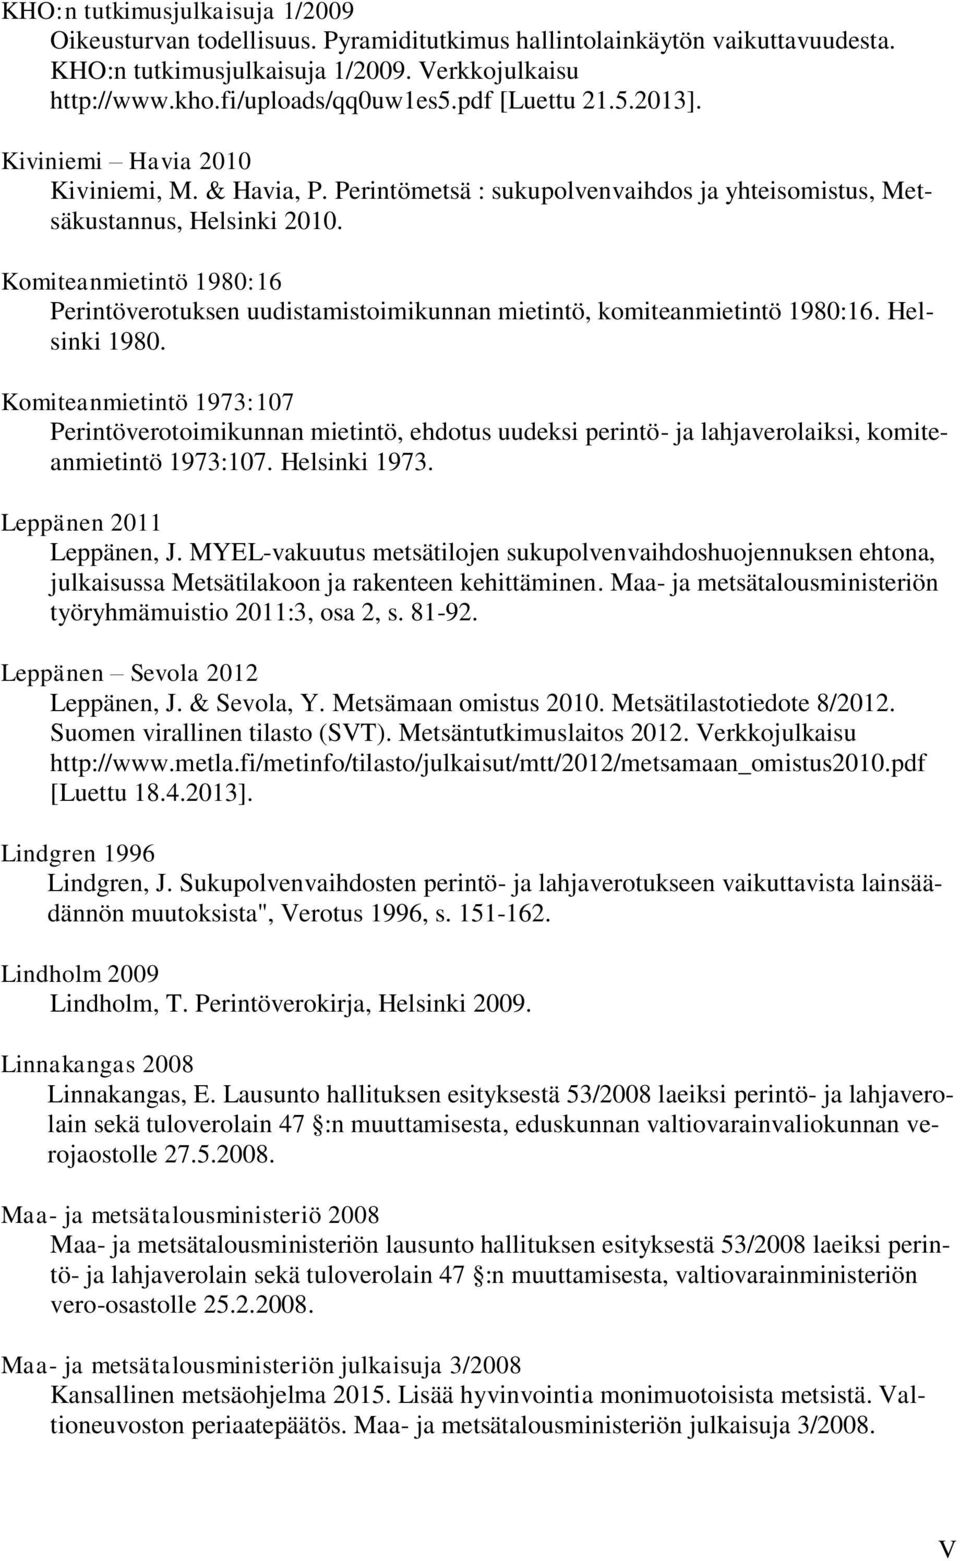 Komiteanmietintö 1980:16 Perintöverotuksen uudistamistoimikunnan mietintö, komiteanmietintö 1980:16. Helsinki 1980.